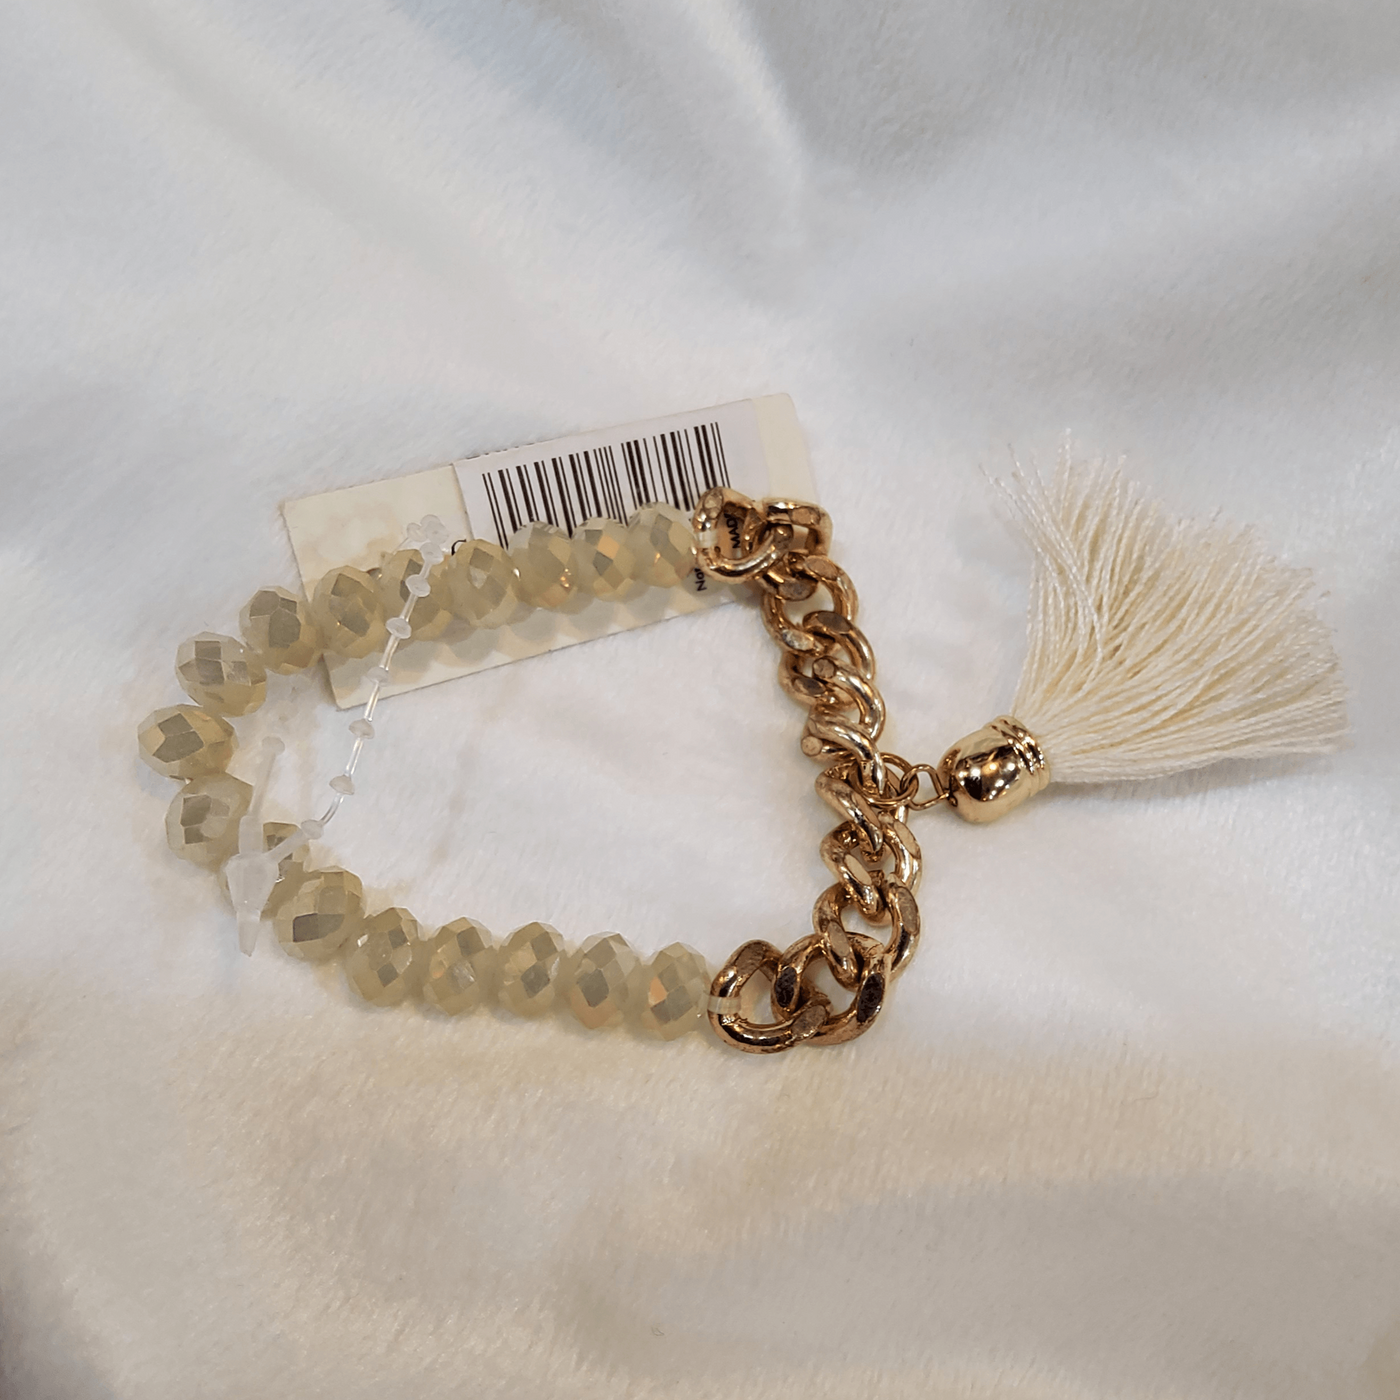 Chain & Beads Bracelet - Little Prairie Girl